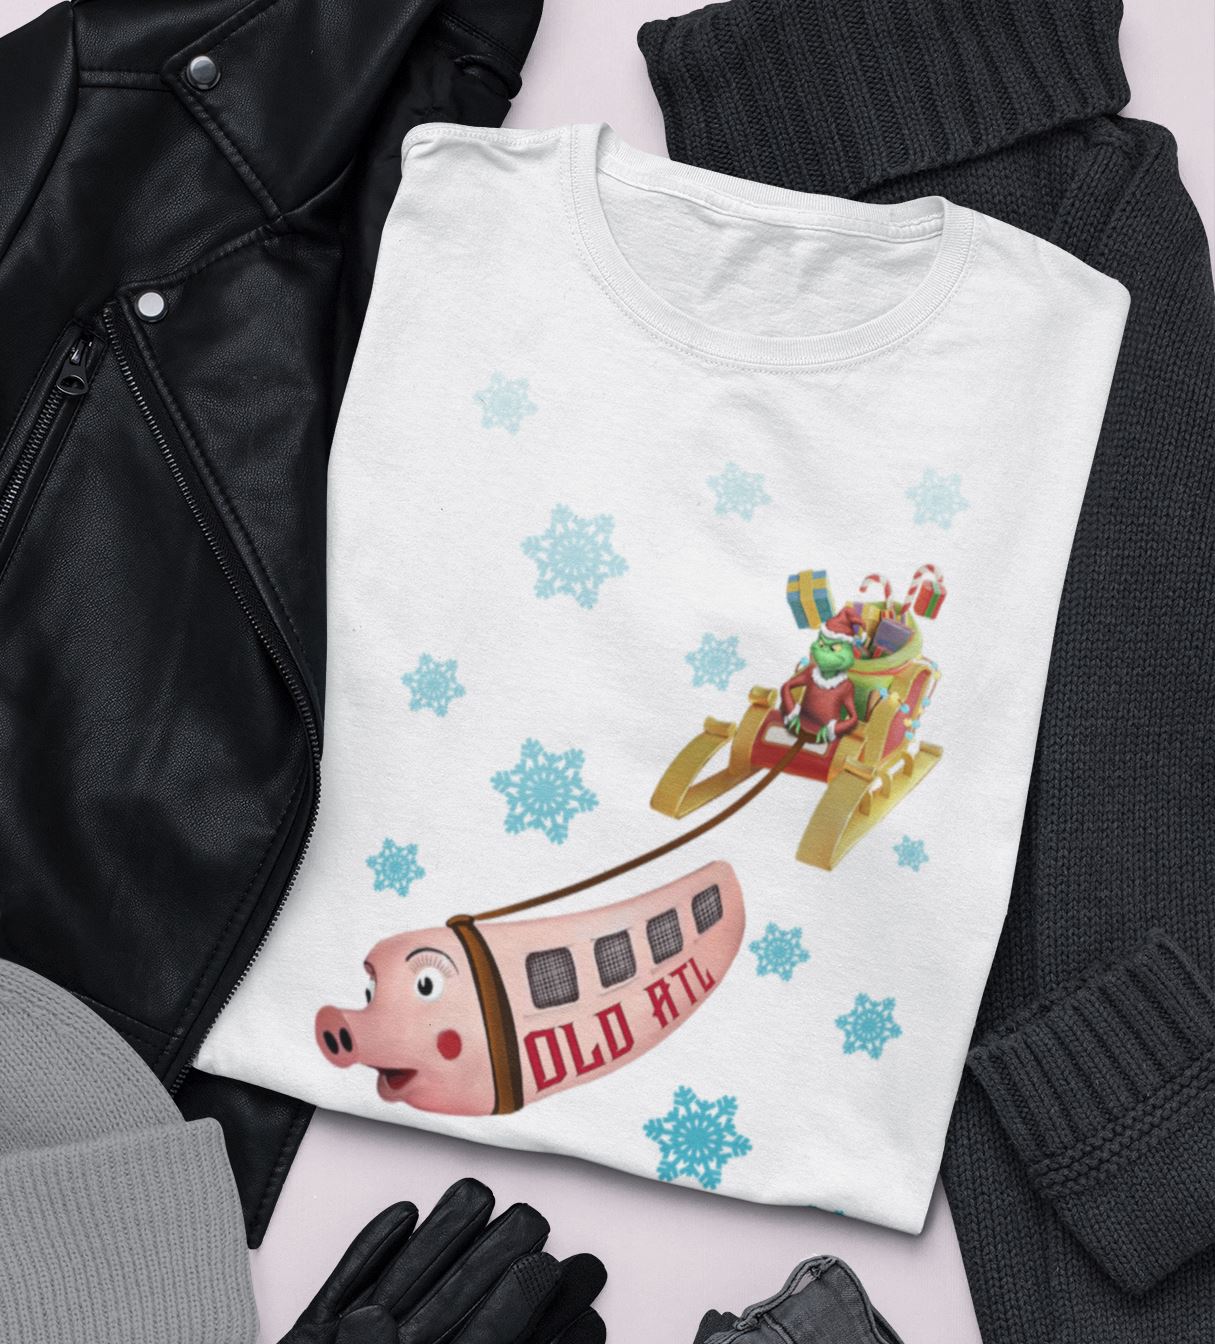 Old ATL "Pink Pig" Christmas Shirt, Atlanta Holiday Shirt T-Shirt B1ack By Design LLC 